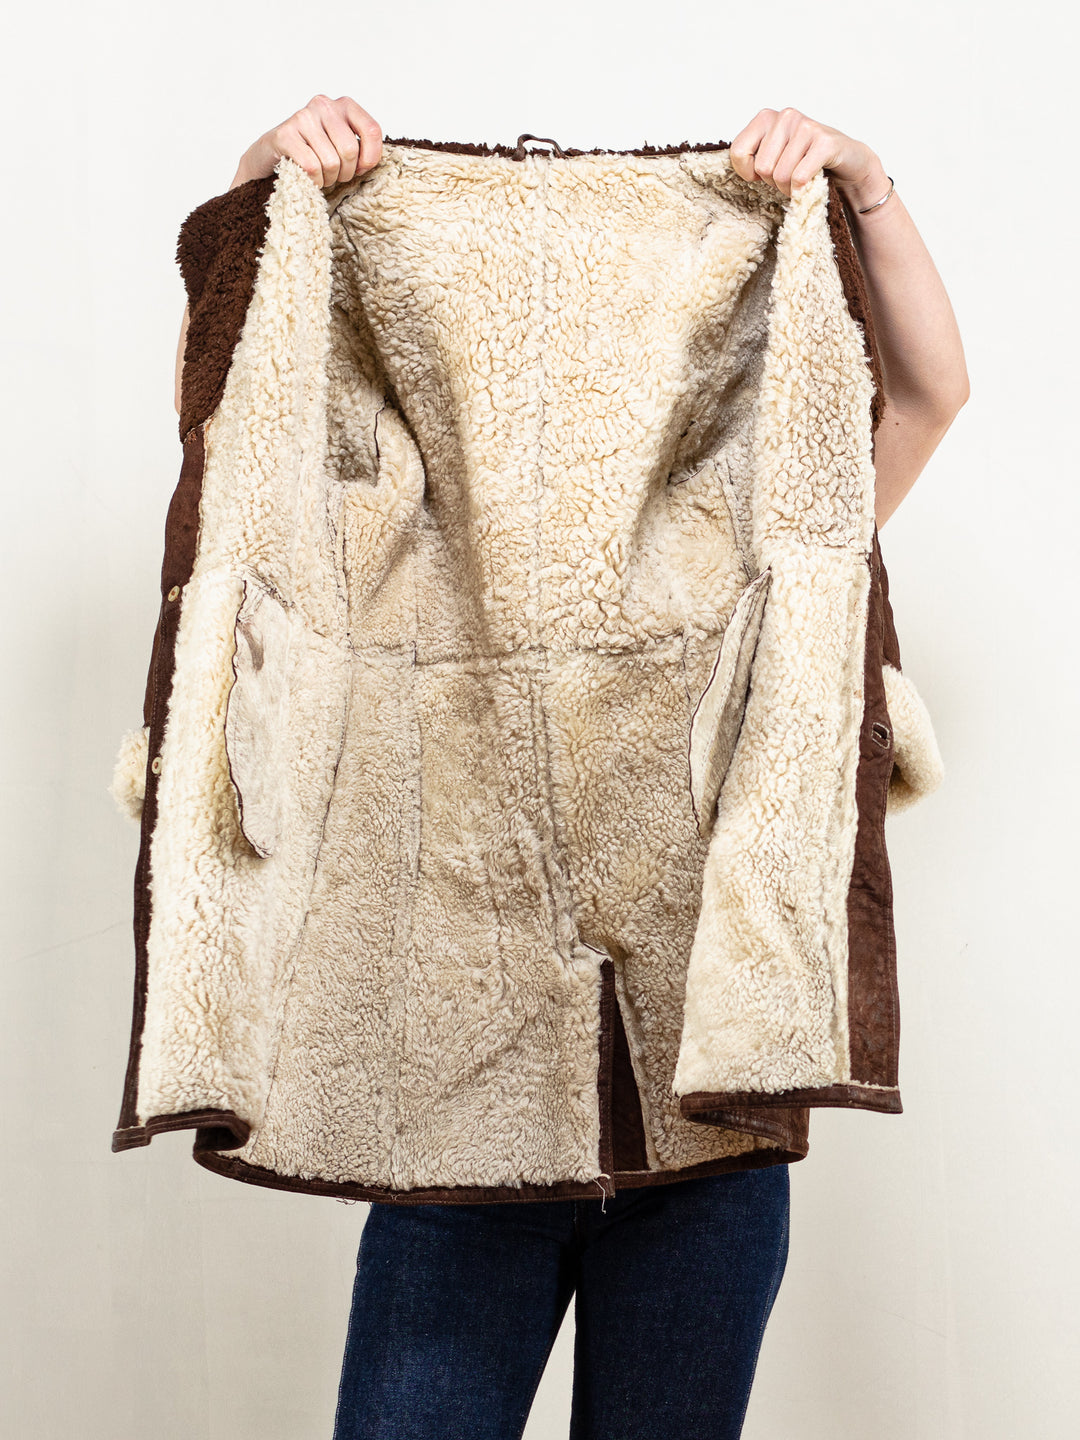 Penny Lane Coat 70's brown women vintage sheepskin coat winter outerwear warm boho bohemian western hippie penny lane jacket size medium